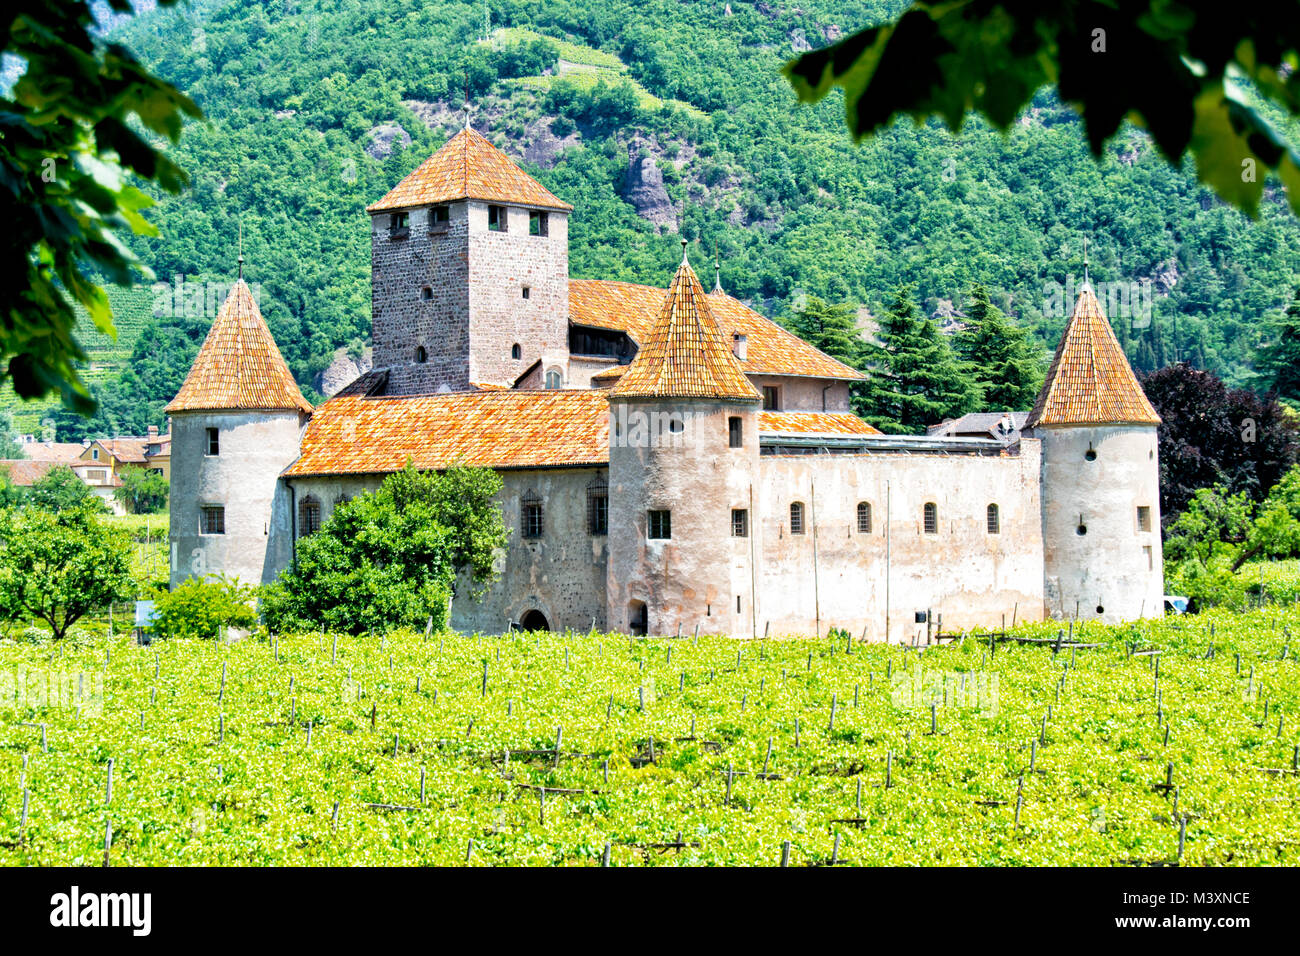 La storica belle mura e torri rotonde del castello "Castel Mareccio' con vigneti - Bolzano, Alto Adige, Italia Foto Stock